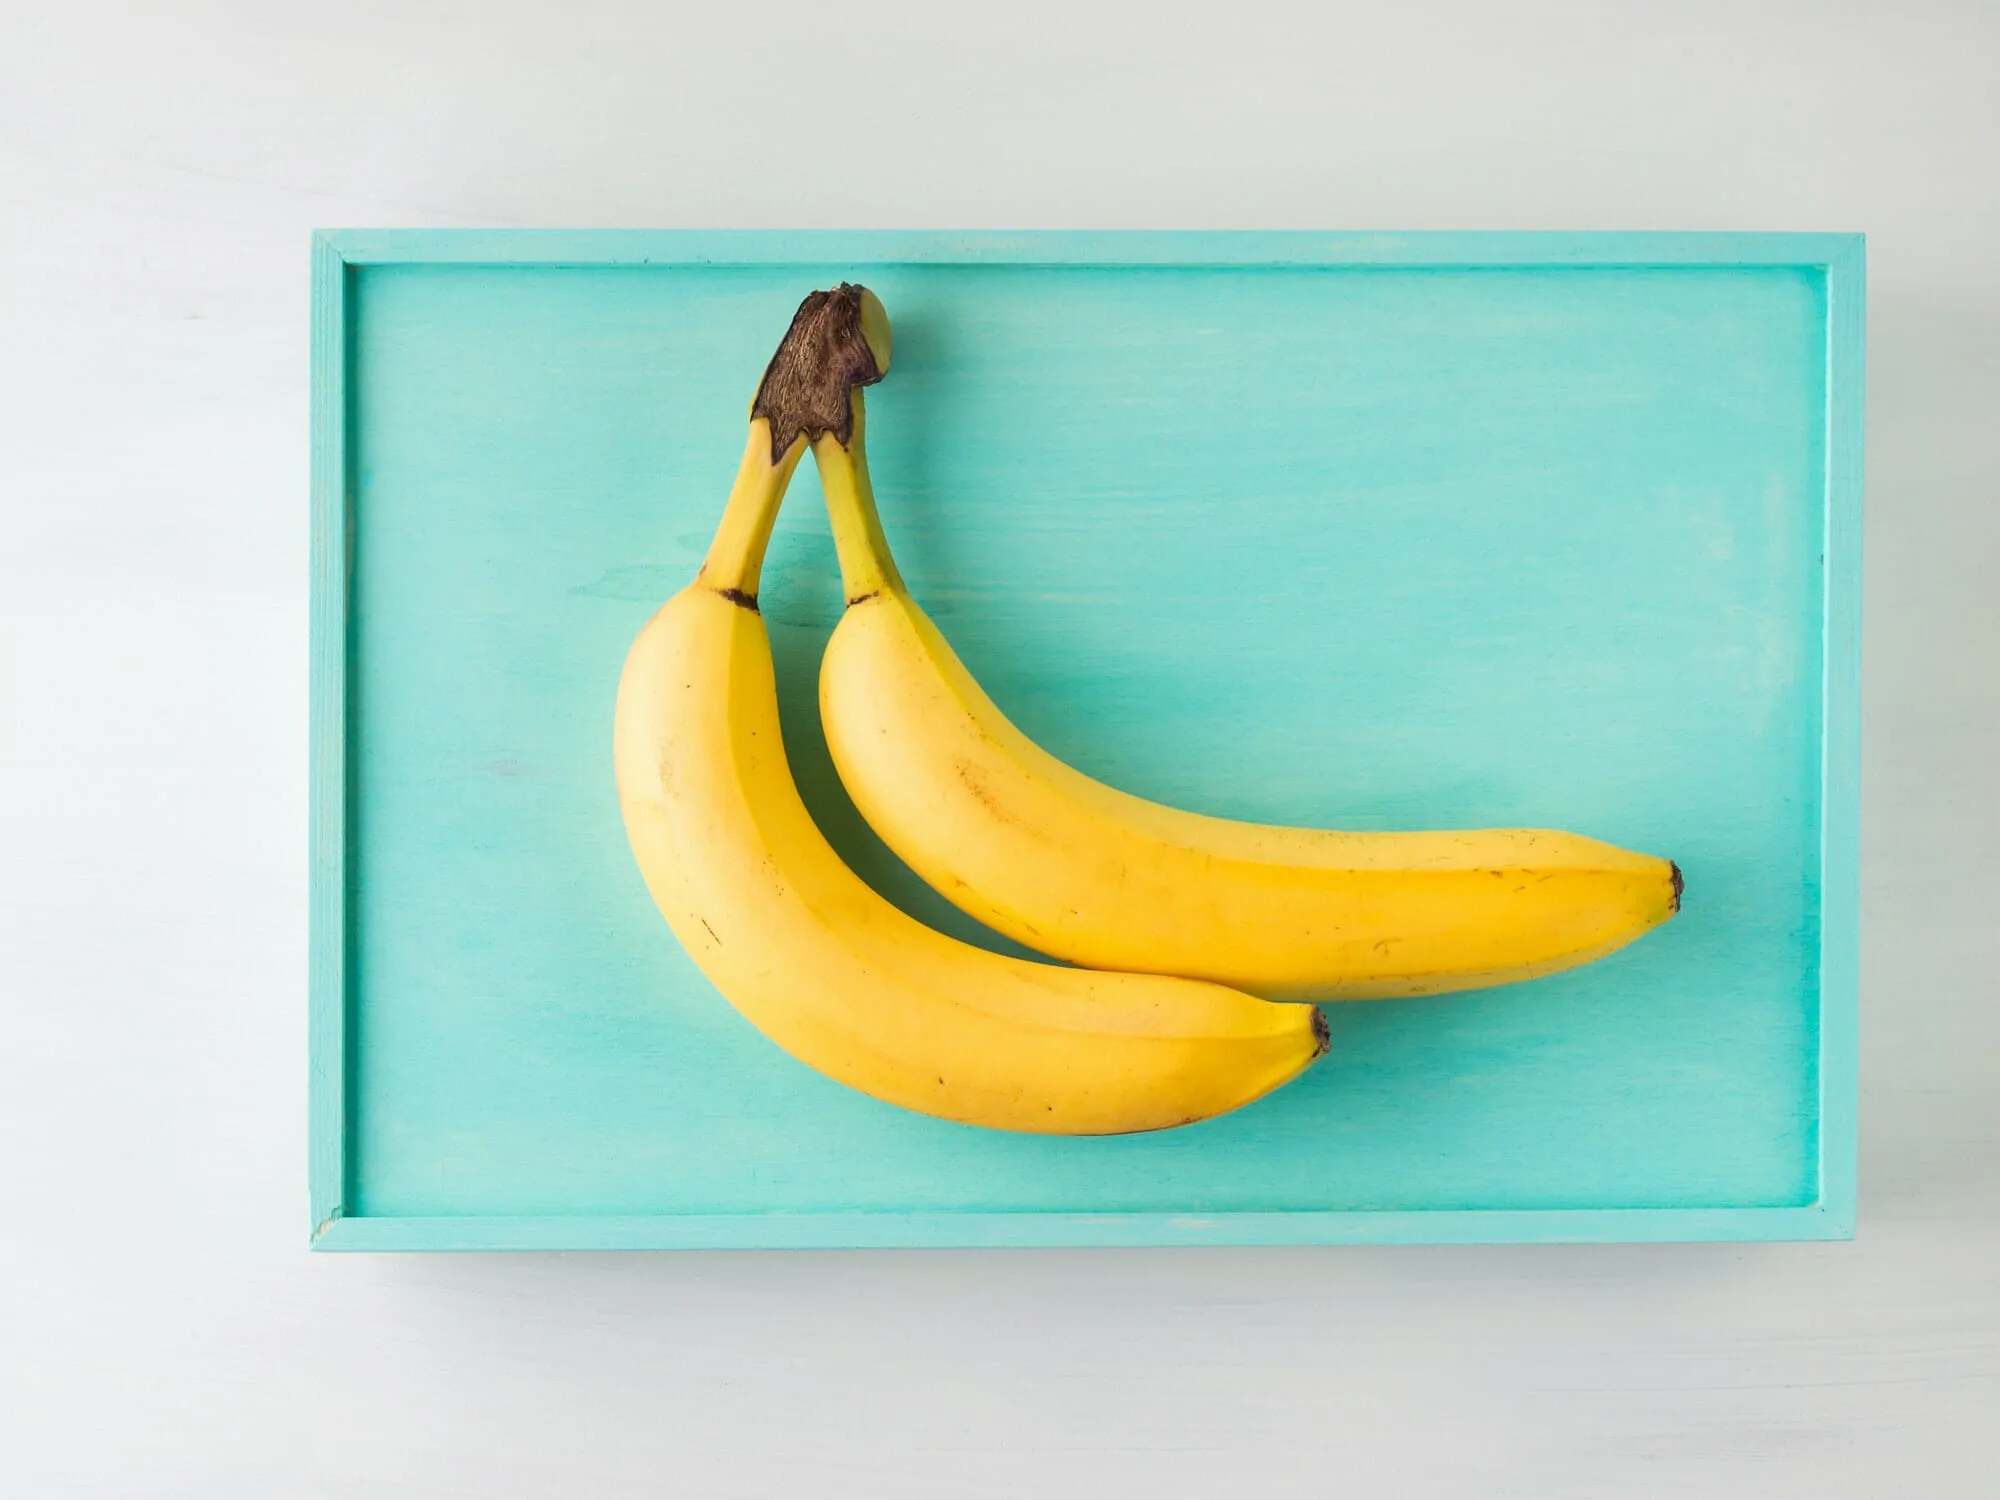 Does banana contain collagen?